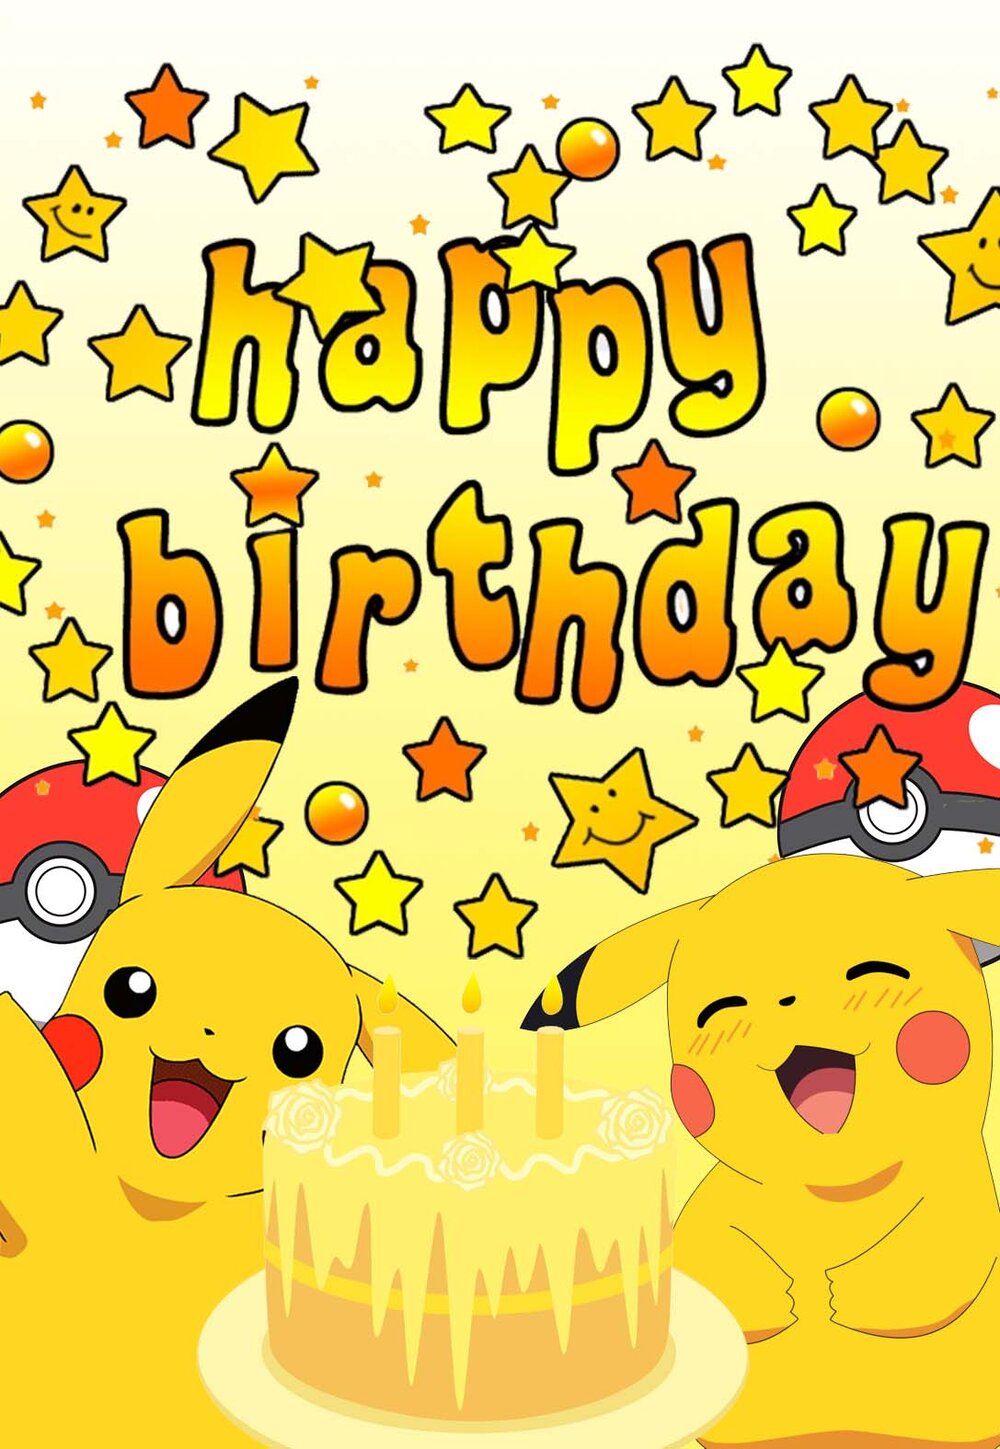 Printable Pokemon Birthday Cards Printbirthday Cards